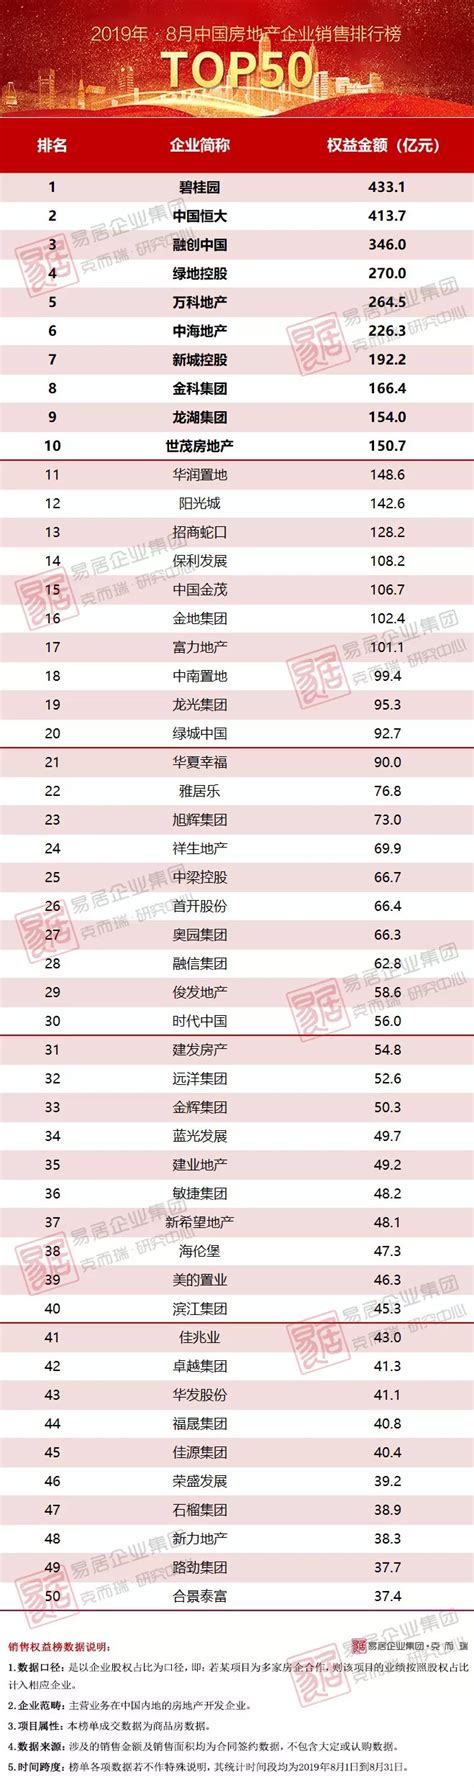 2019年8月中国房地产企业销售金额TOP50排行榜_世茂集团